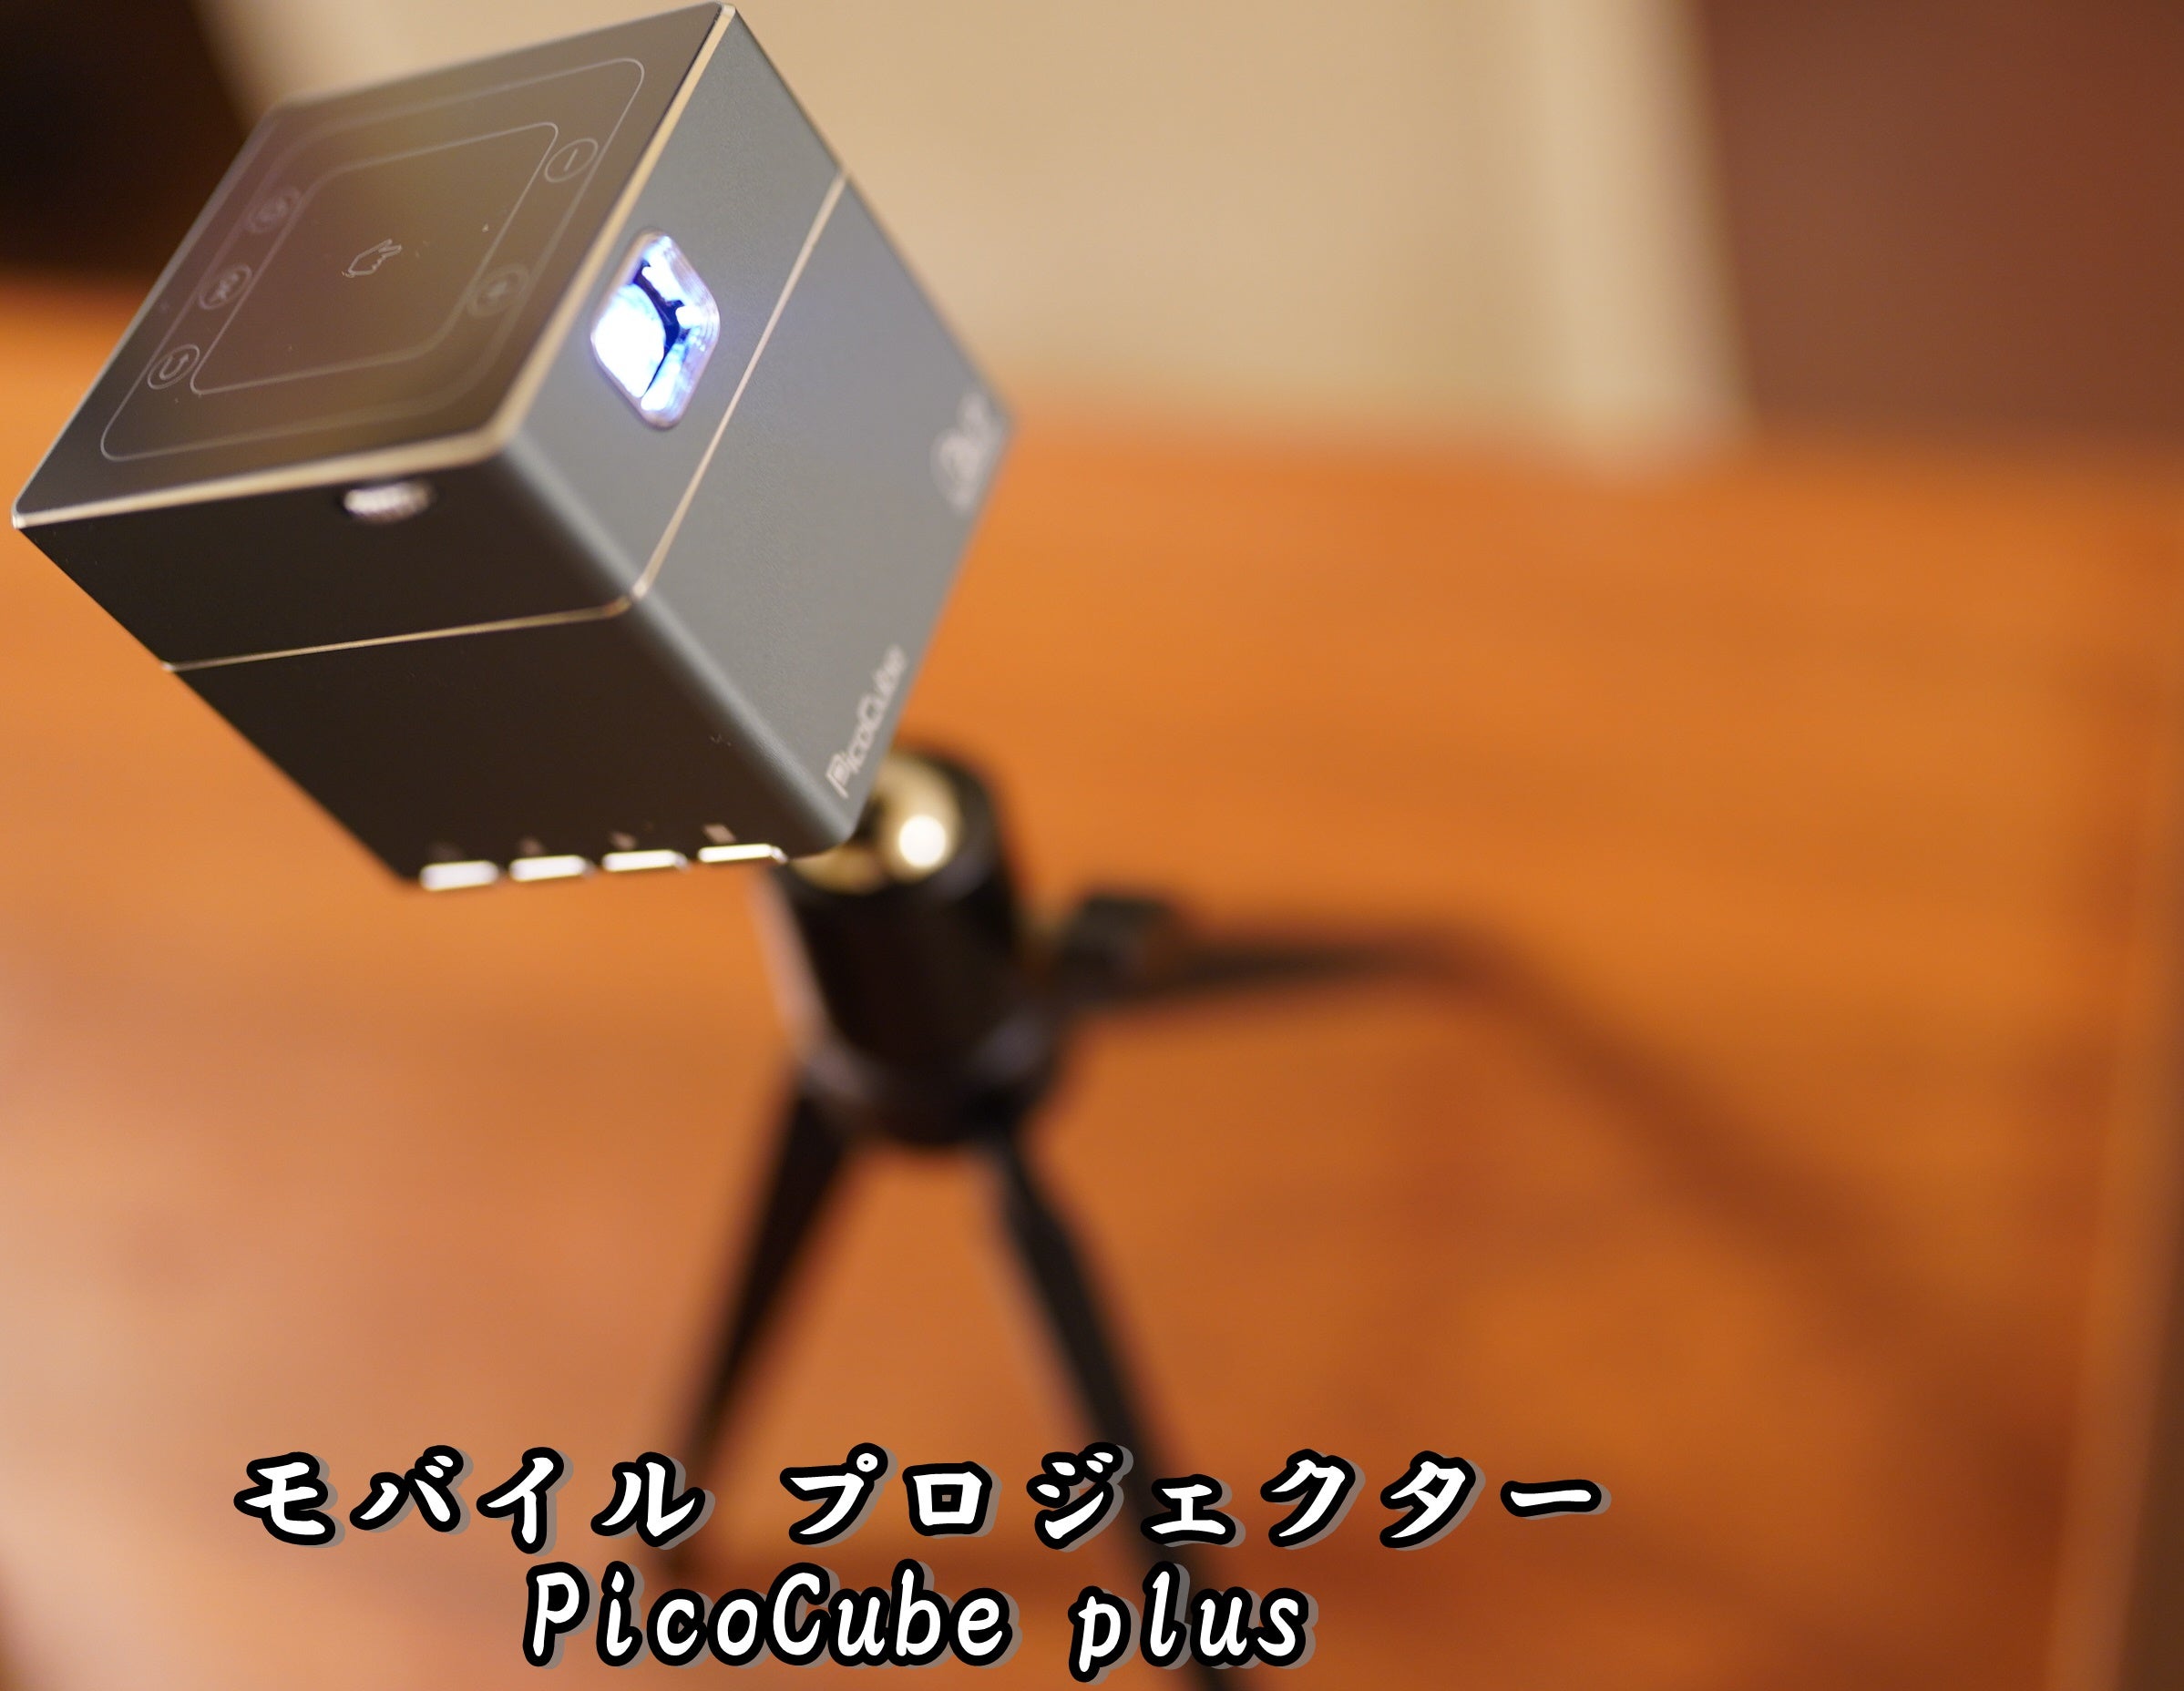 夢の天井投影 手のひらサイズの超小型プロジェクター「PicoCube ピコキューブ」 華麗なるスターバックスマダム